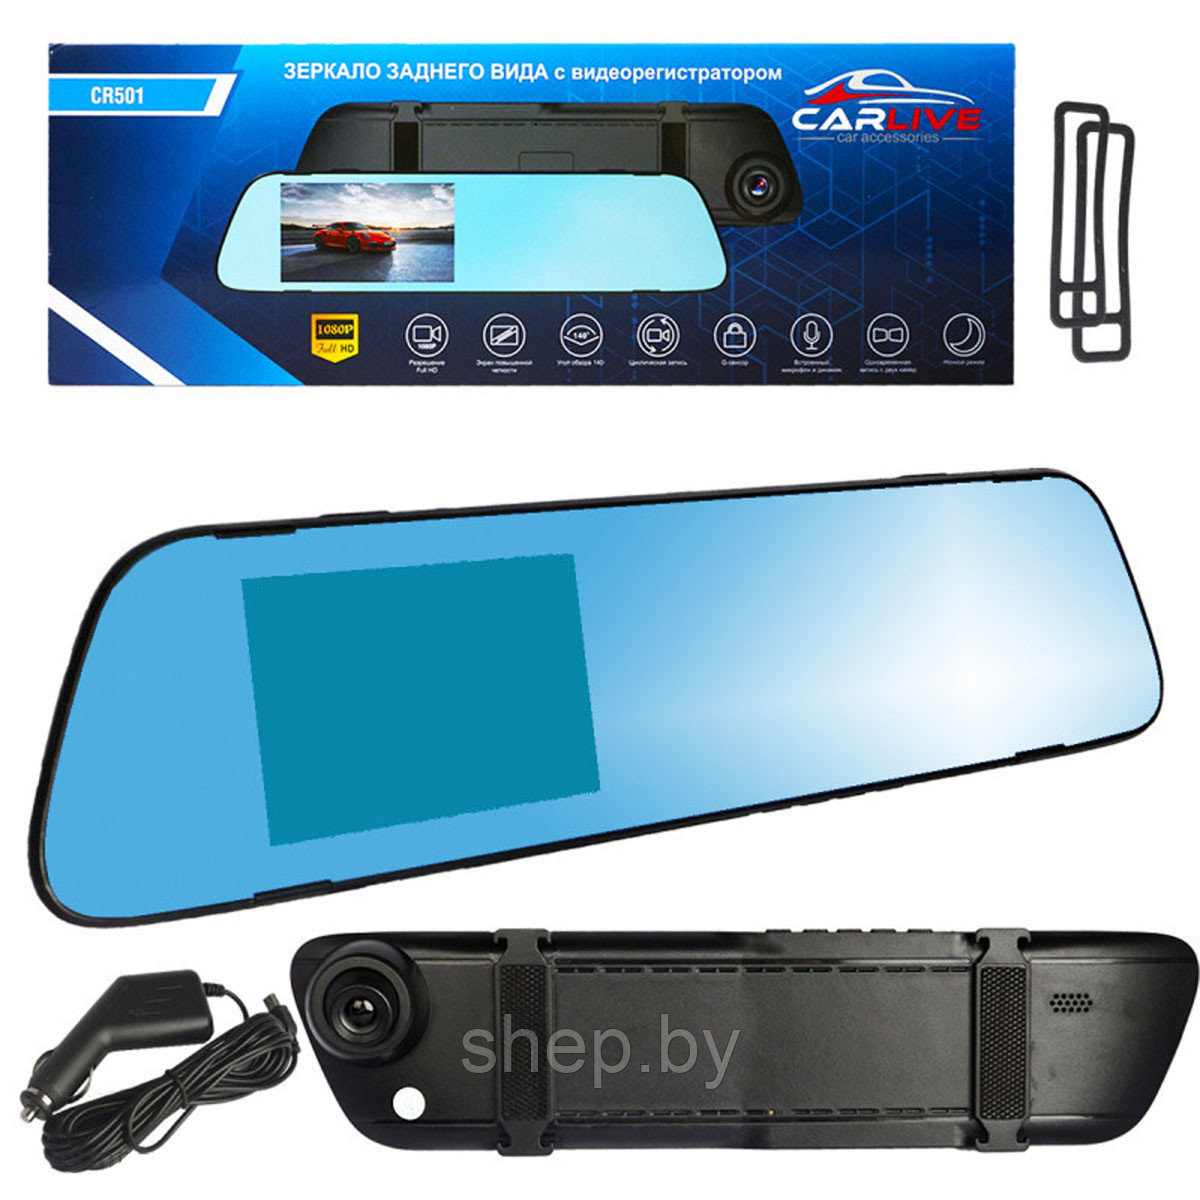 Автомобильное зеркало видеорегистратор CARLIVE CR501, цвет черный